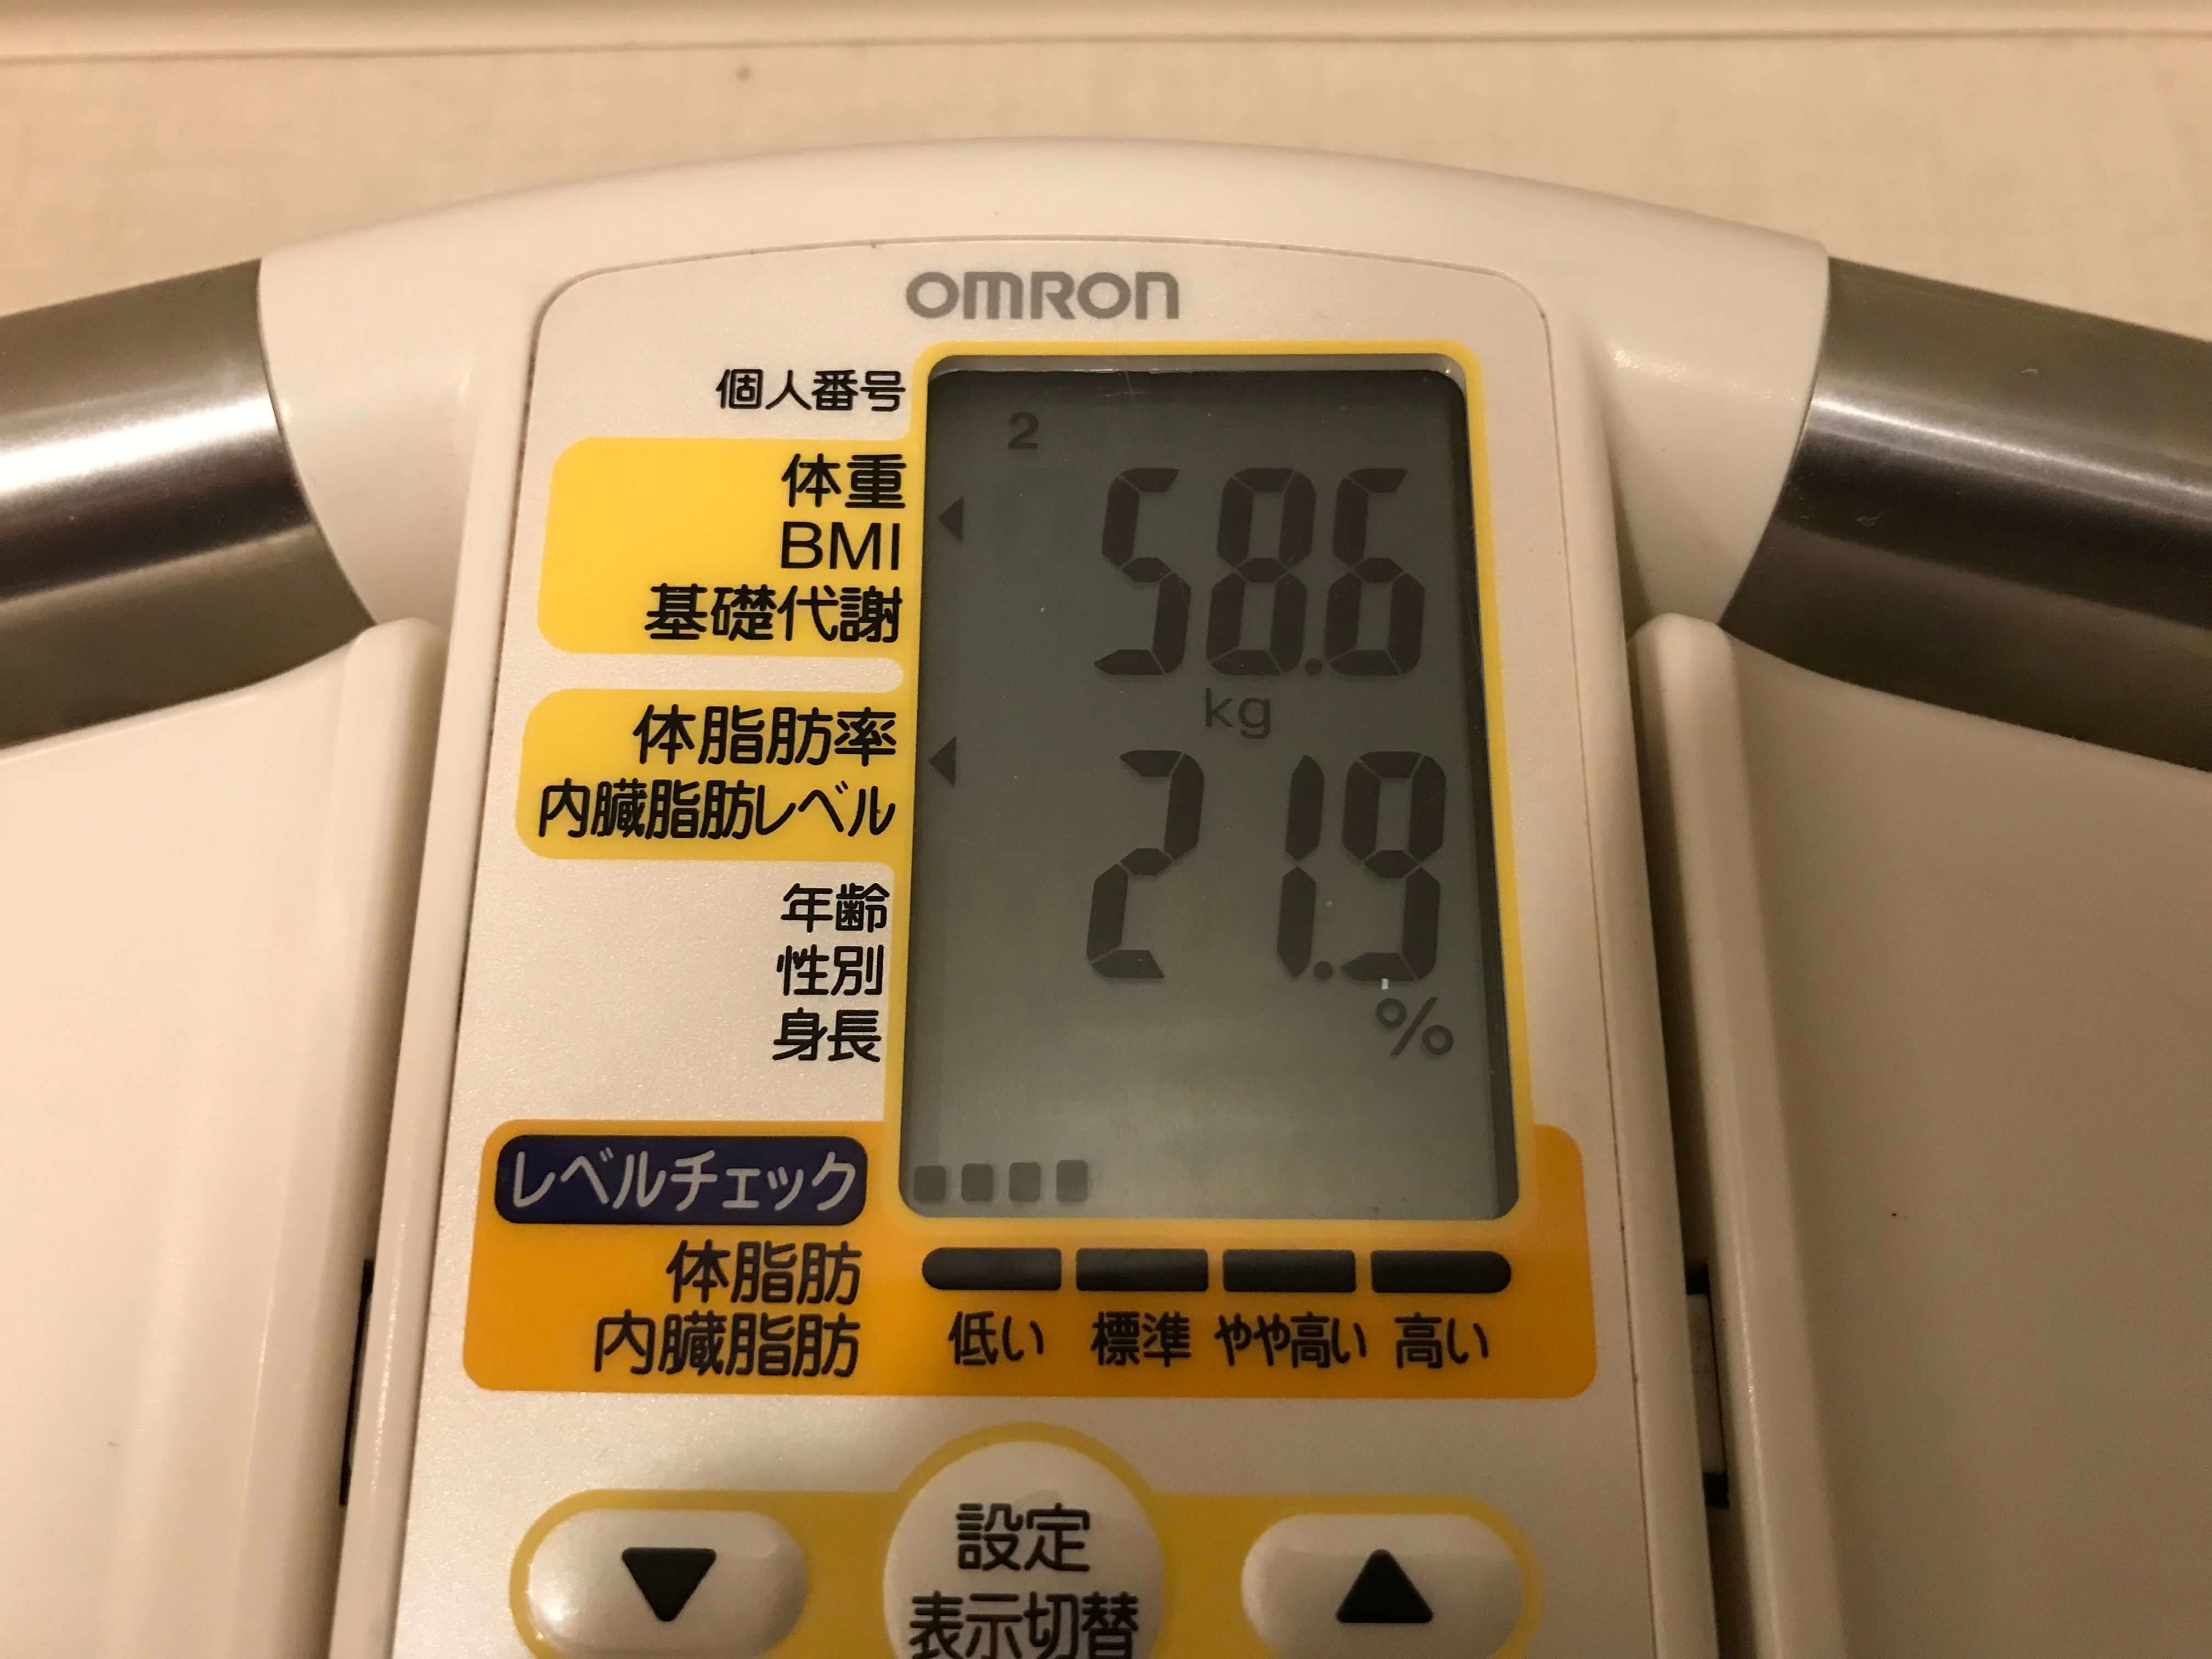 2019/10/16〜2019/10/31 体重経過と運動の記録詳細